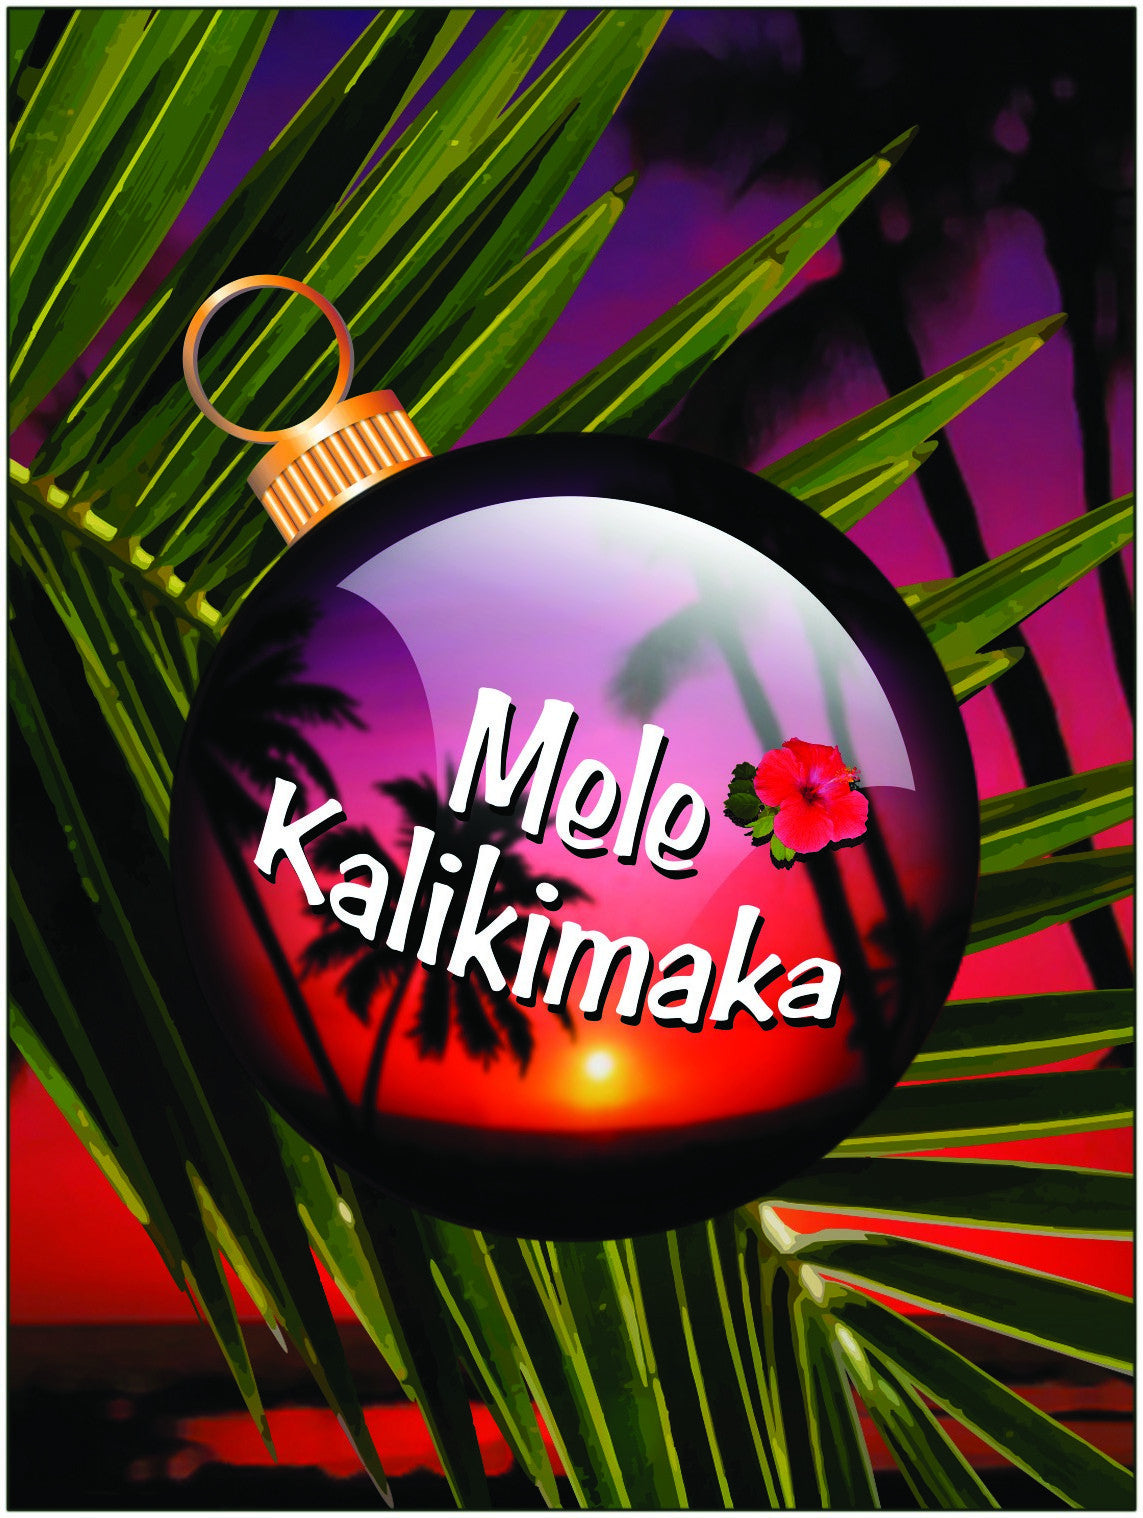 Aloha Mele Kalikimaka means Merry Christmas - JWB Art Unlimited